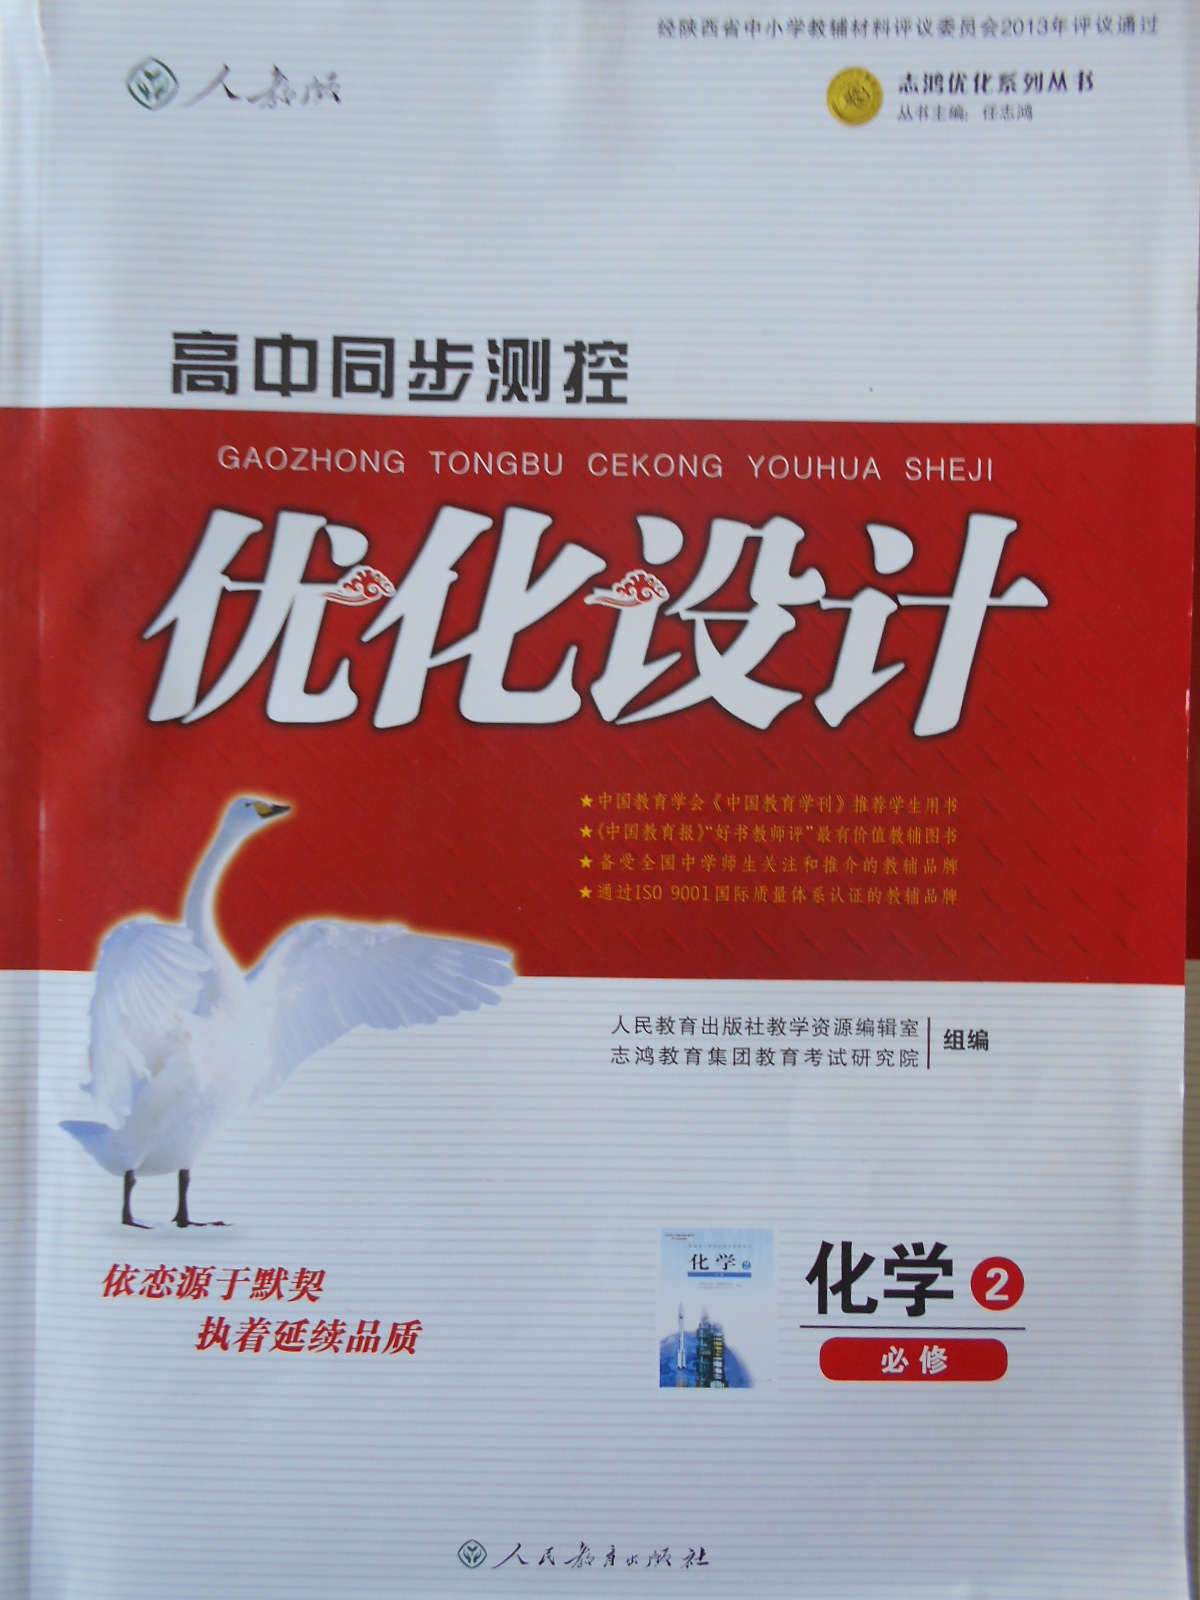 系统优化工具 TweakPower_v2.045 中文版-PC软件库